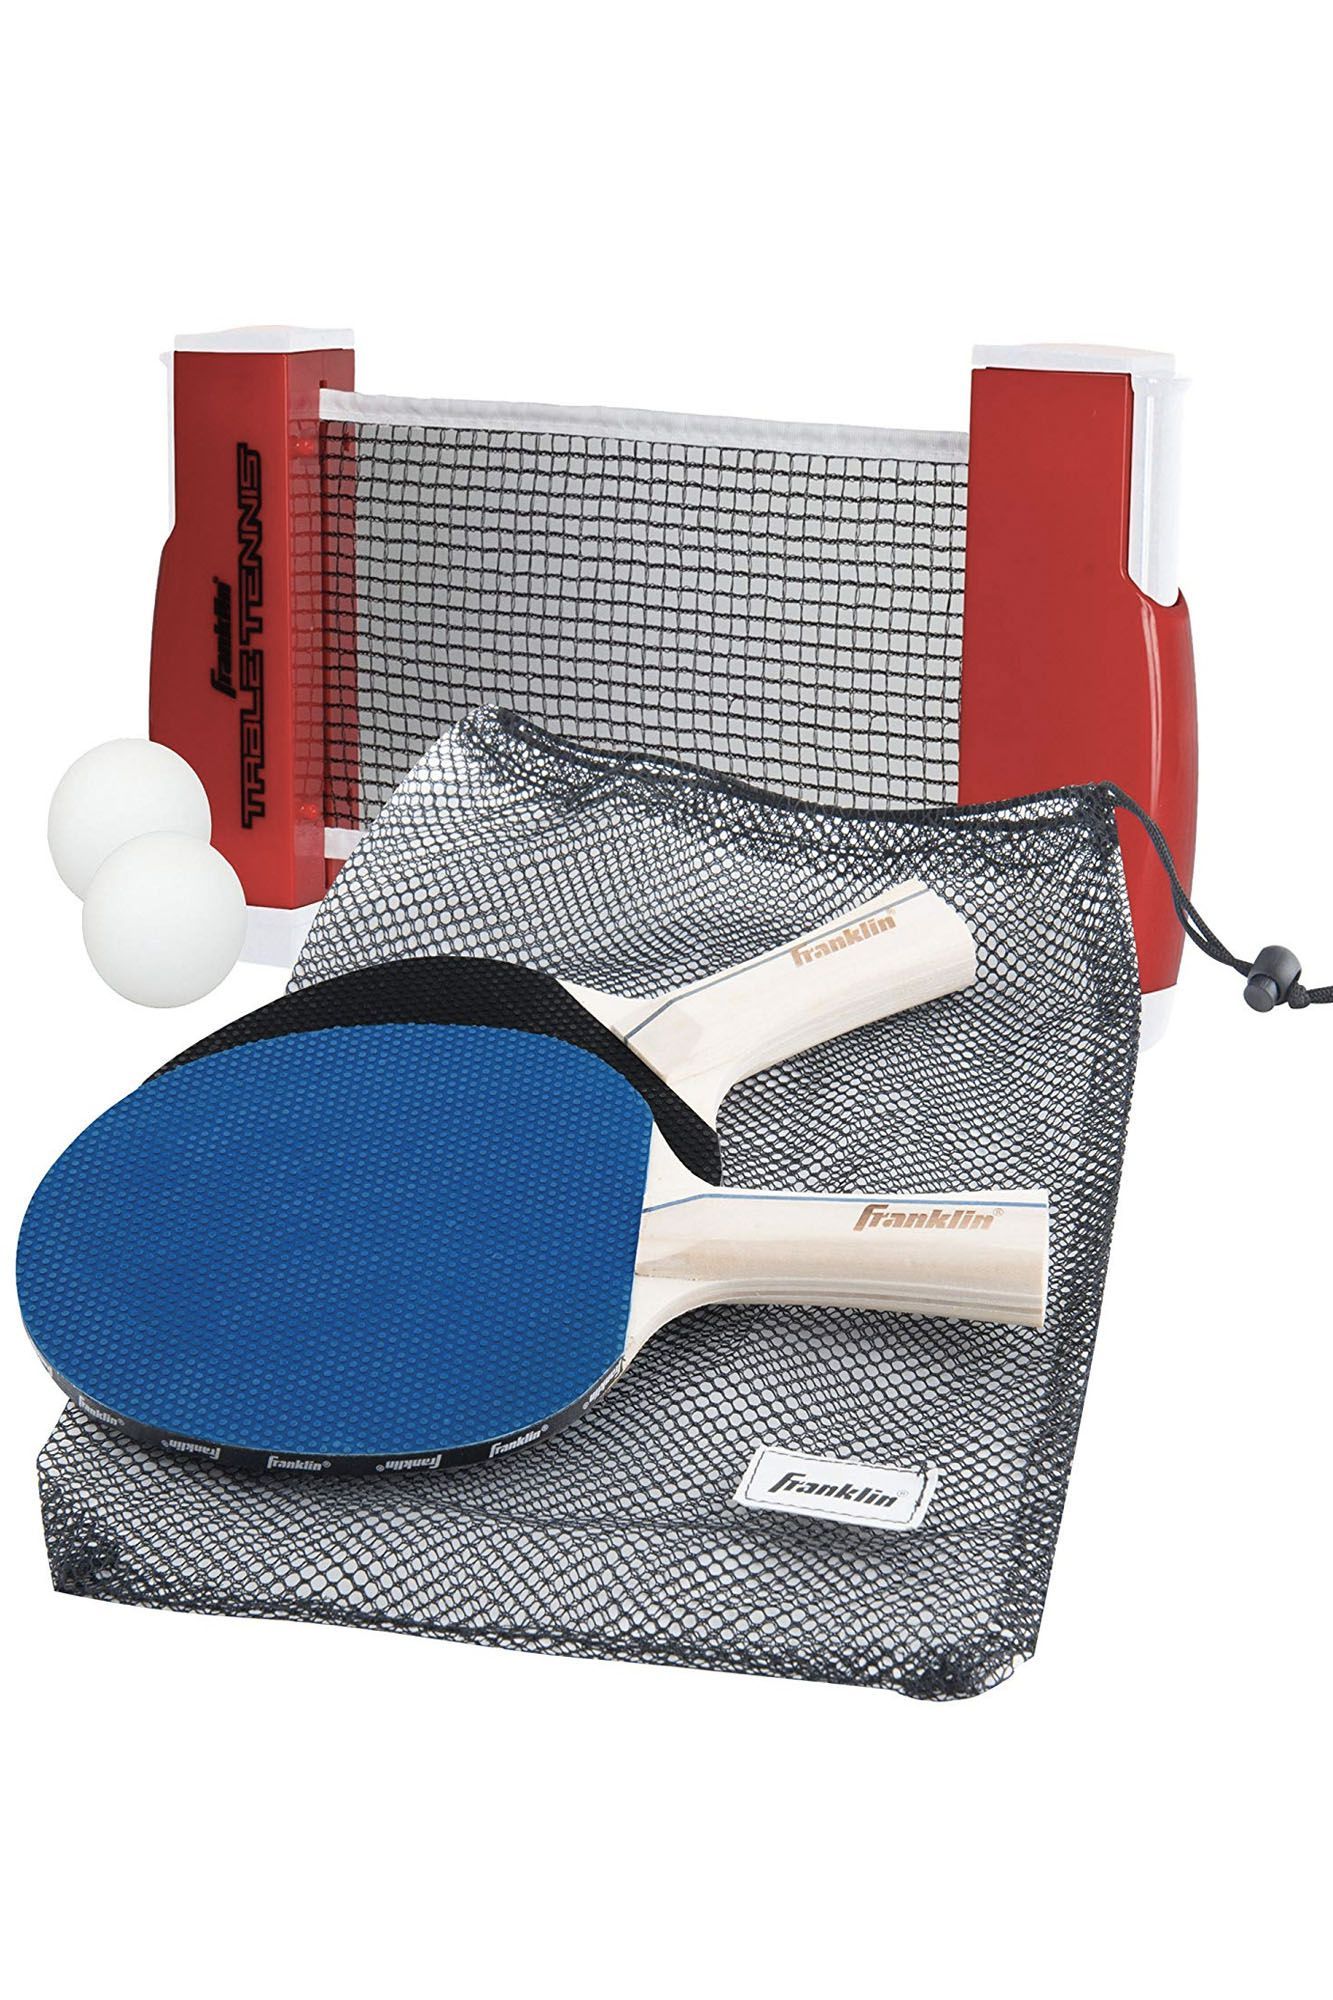 Комплект для игры в теннис. ARTENGO 700 ракетка для настольного тенниса. Набор д/настольного тенниса (ракетка 2шт,шар 3шт). Набор для настольный теннис Ping - Pong. Ракетка настольного тенниса start Level 200.